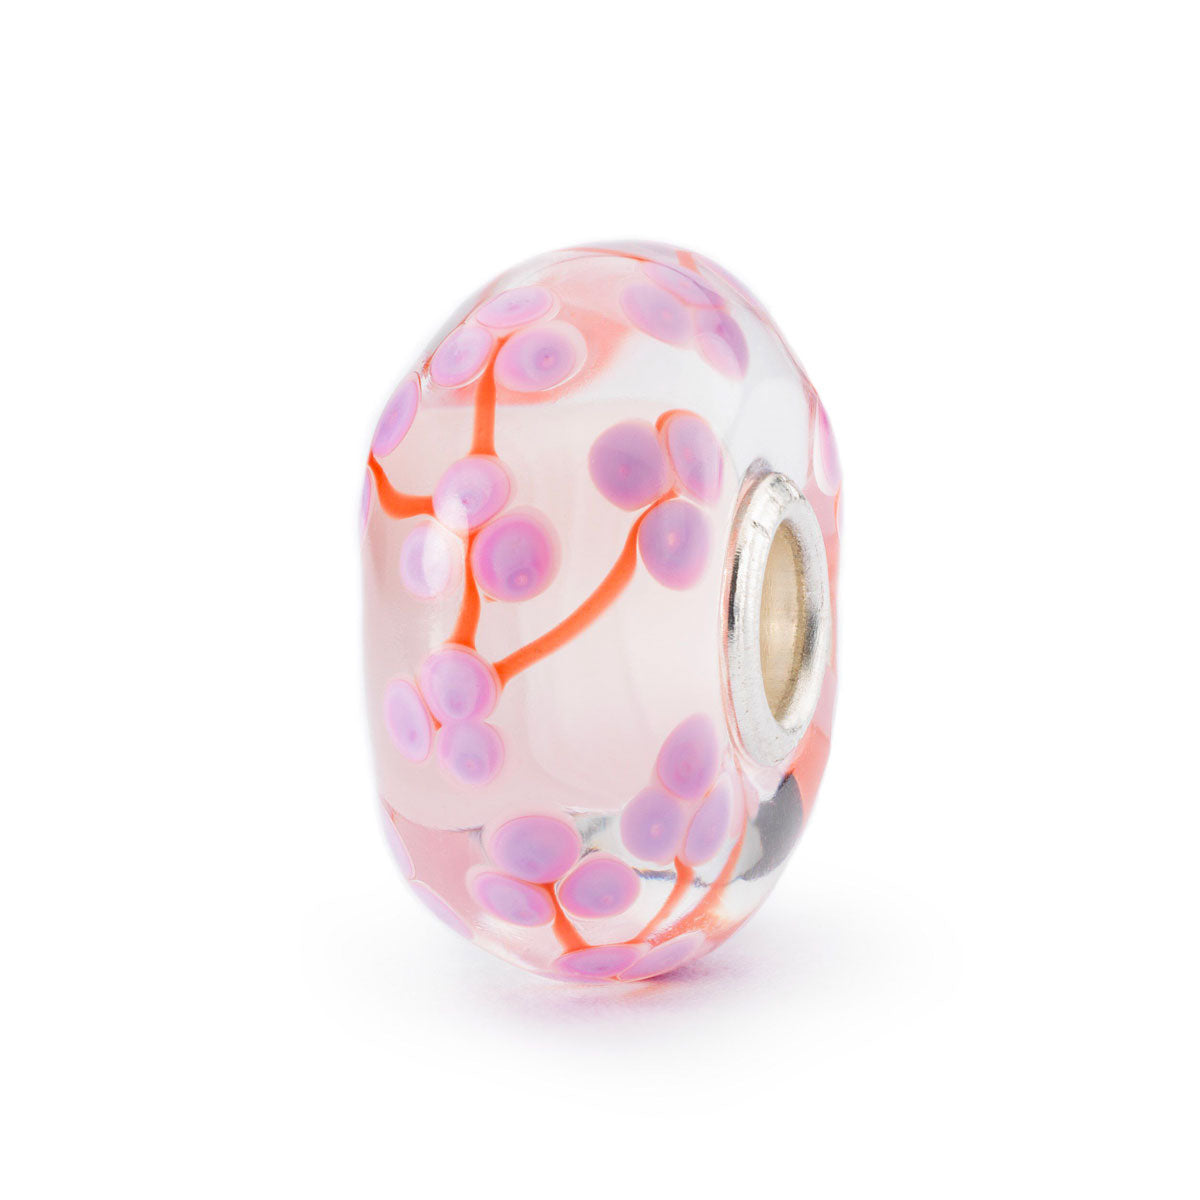 Vincitore del People's Beads 2022 Trollbeads. Fiori di pesco, come dice il suo nome, è un beads in vetro su cui sono disegnati i piccoli fiori rosa che nascono in primavera sull'albero spoglio.